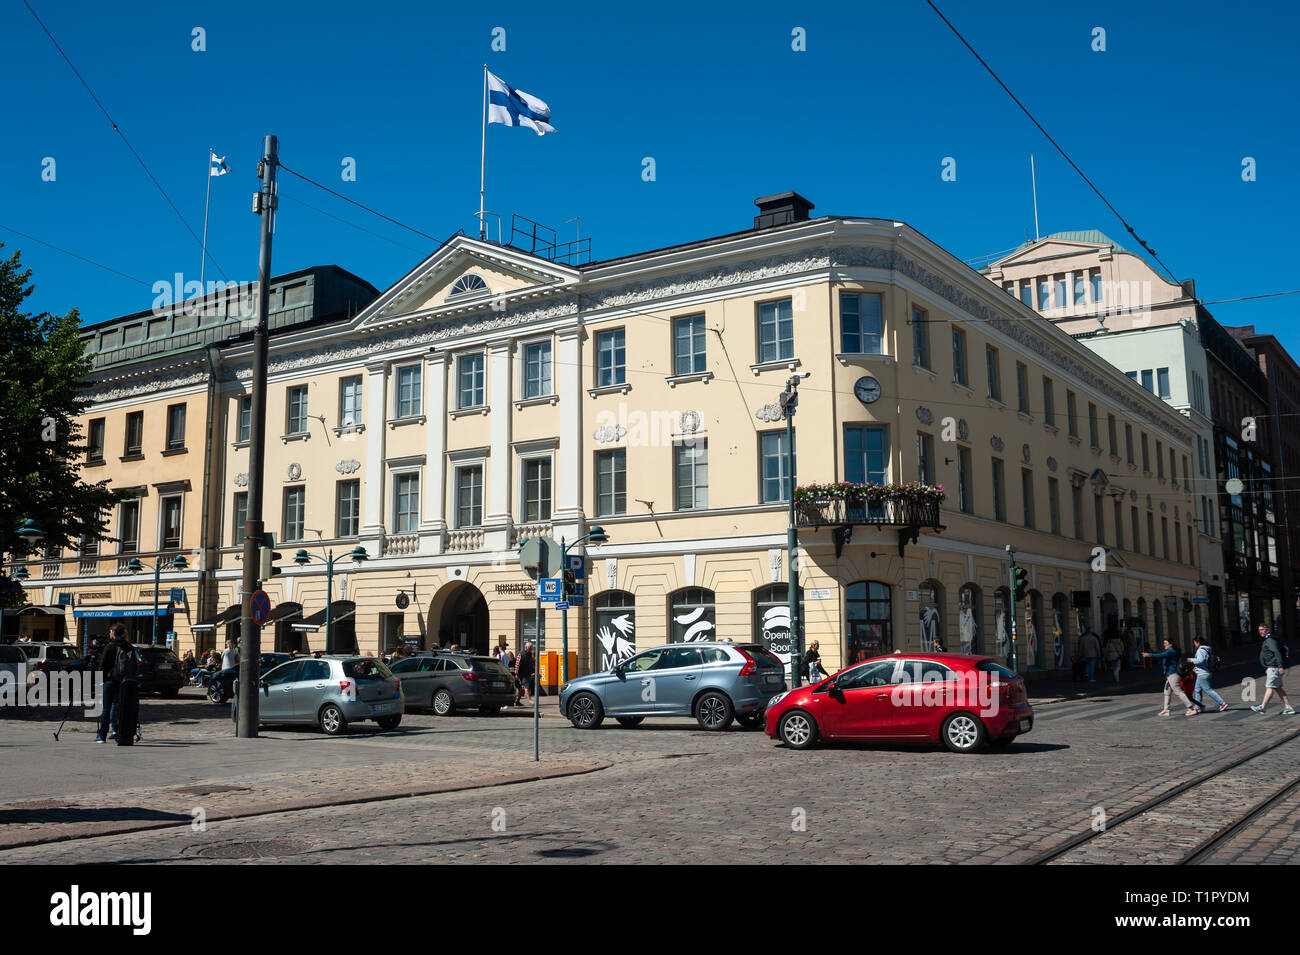 23.06.2018, Helsinki, Finlandia, Europa - Una scena di strada nel centro della capitale finlandese. Foto Stock